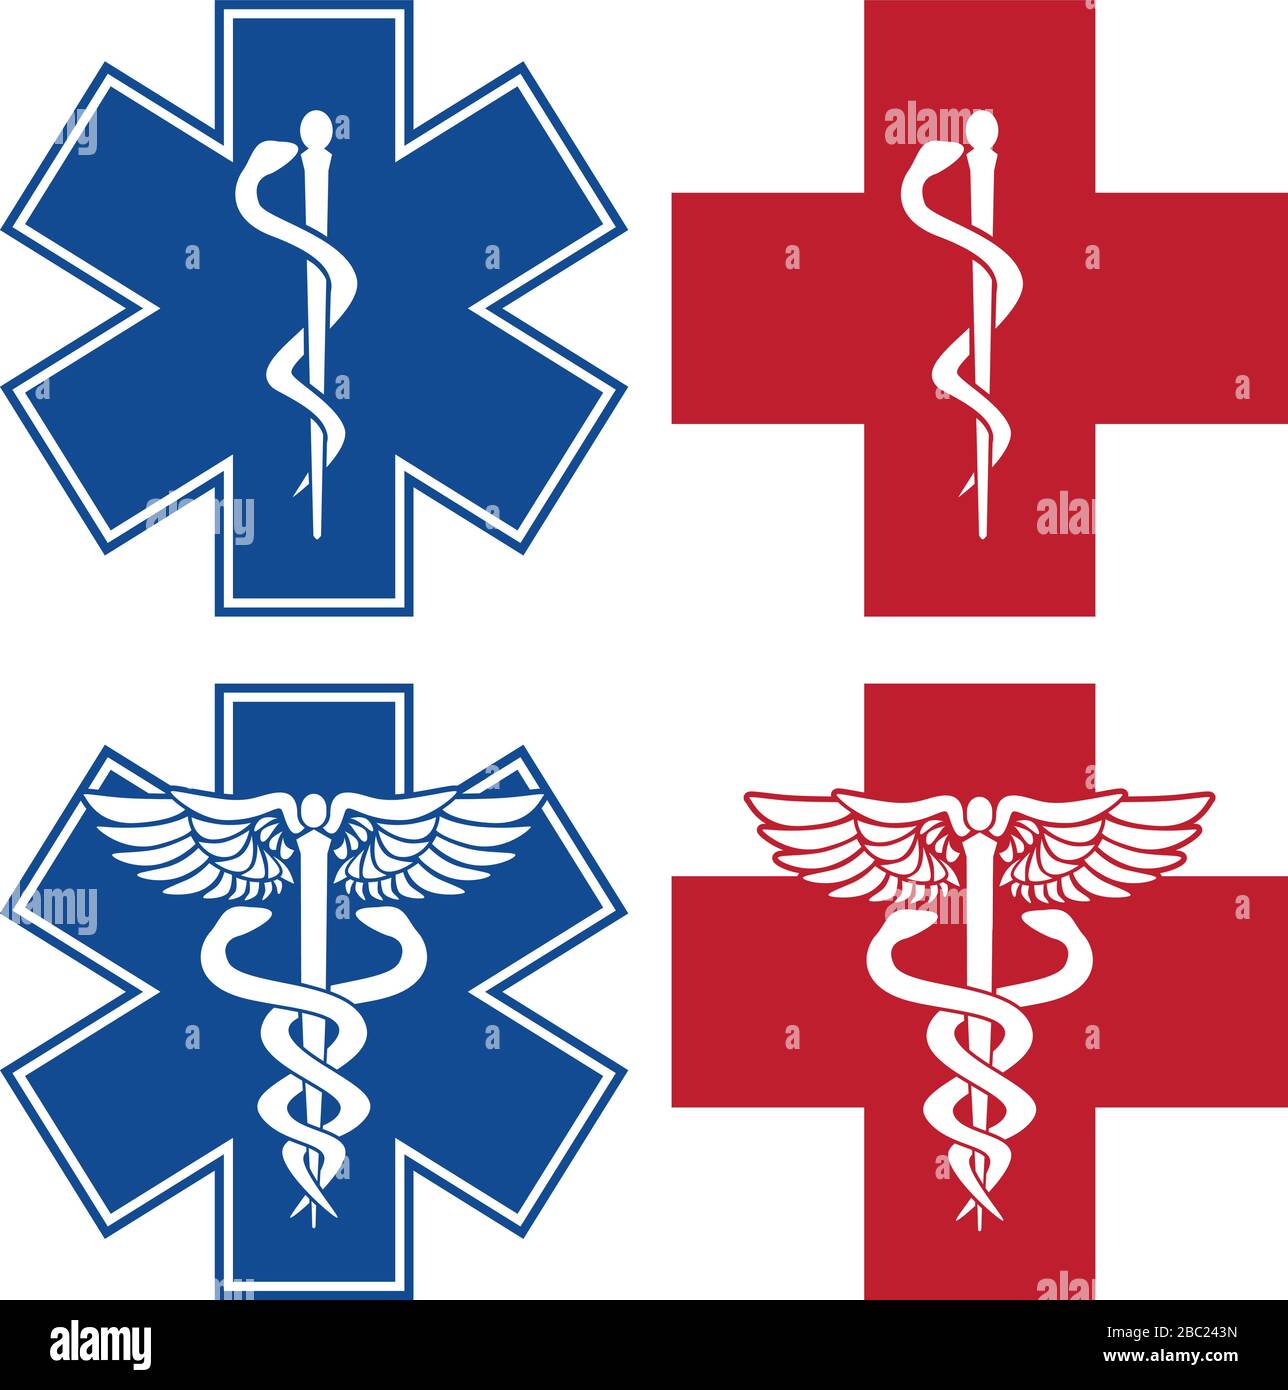 EMT, infirmière, docteur Caduceus Medical Services Croix-Rouge et Bleue symboles Illustration vectorielle isolée Illustration de Vecteur